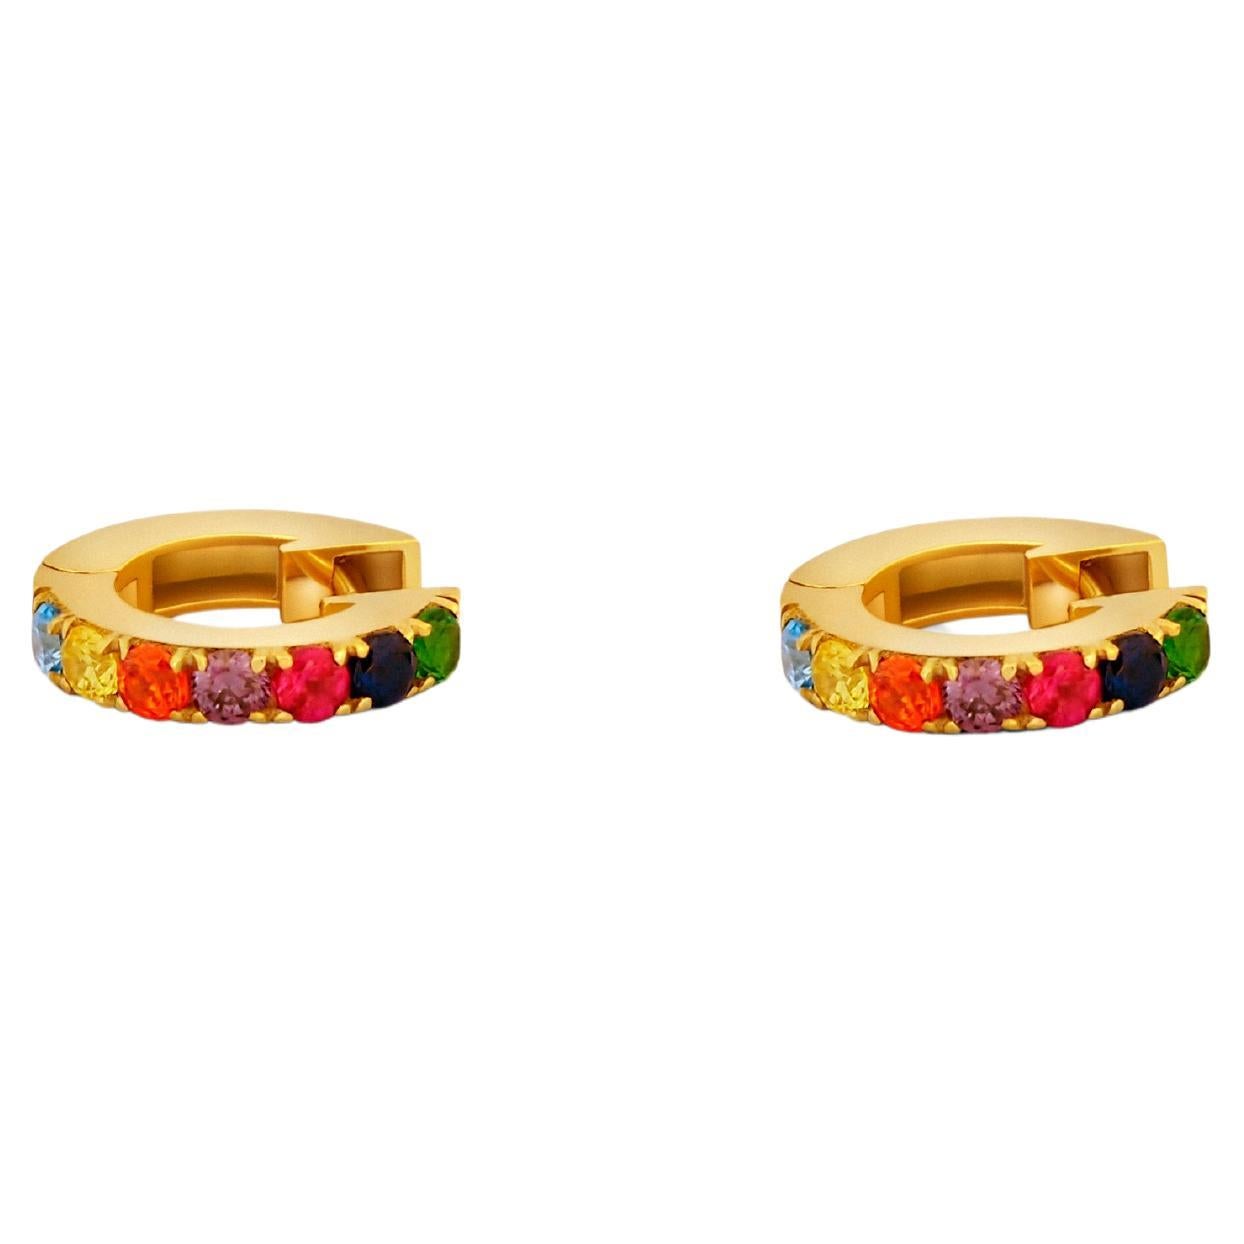 Rainbow Gemstone 14k Gold Huggy Hoop Earrings. Hoop Earrings with Lab Sapphires.  13MM Rainbow Gemstone Huggie Earrings. 14K Gold Multi Colour Huggies. Huggies, Gold Tiny Hoops. Rainbow Eternity Hoop Earrings

Metal: 14kt solid gold
Earring